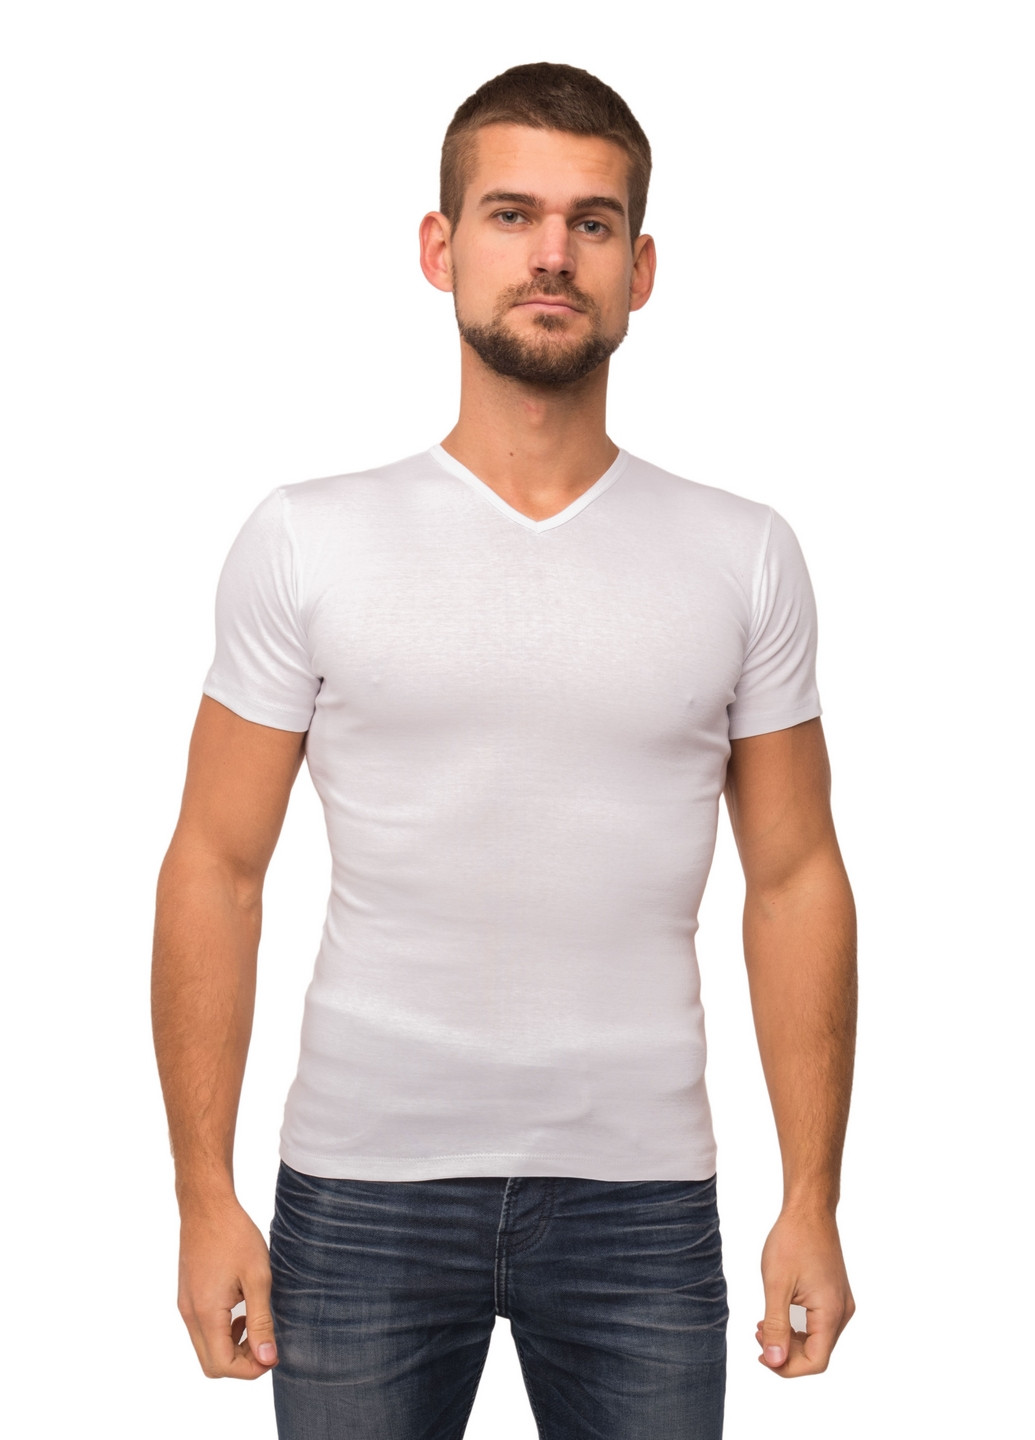 Белая футболка мужская Наталюкс 21-1303